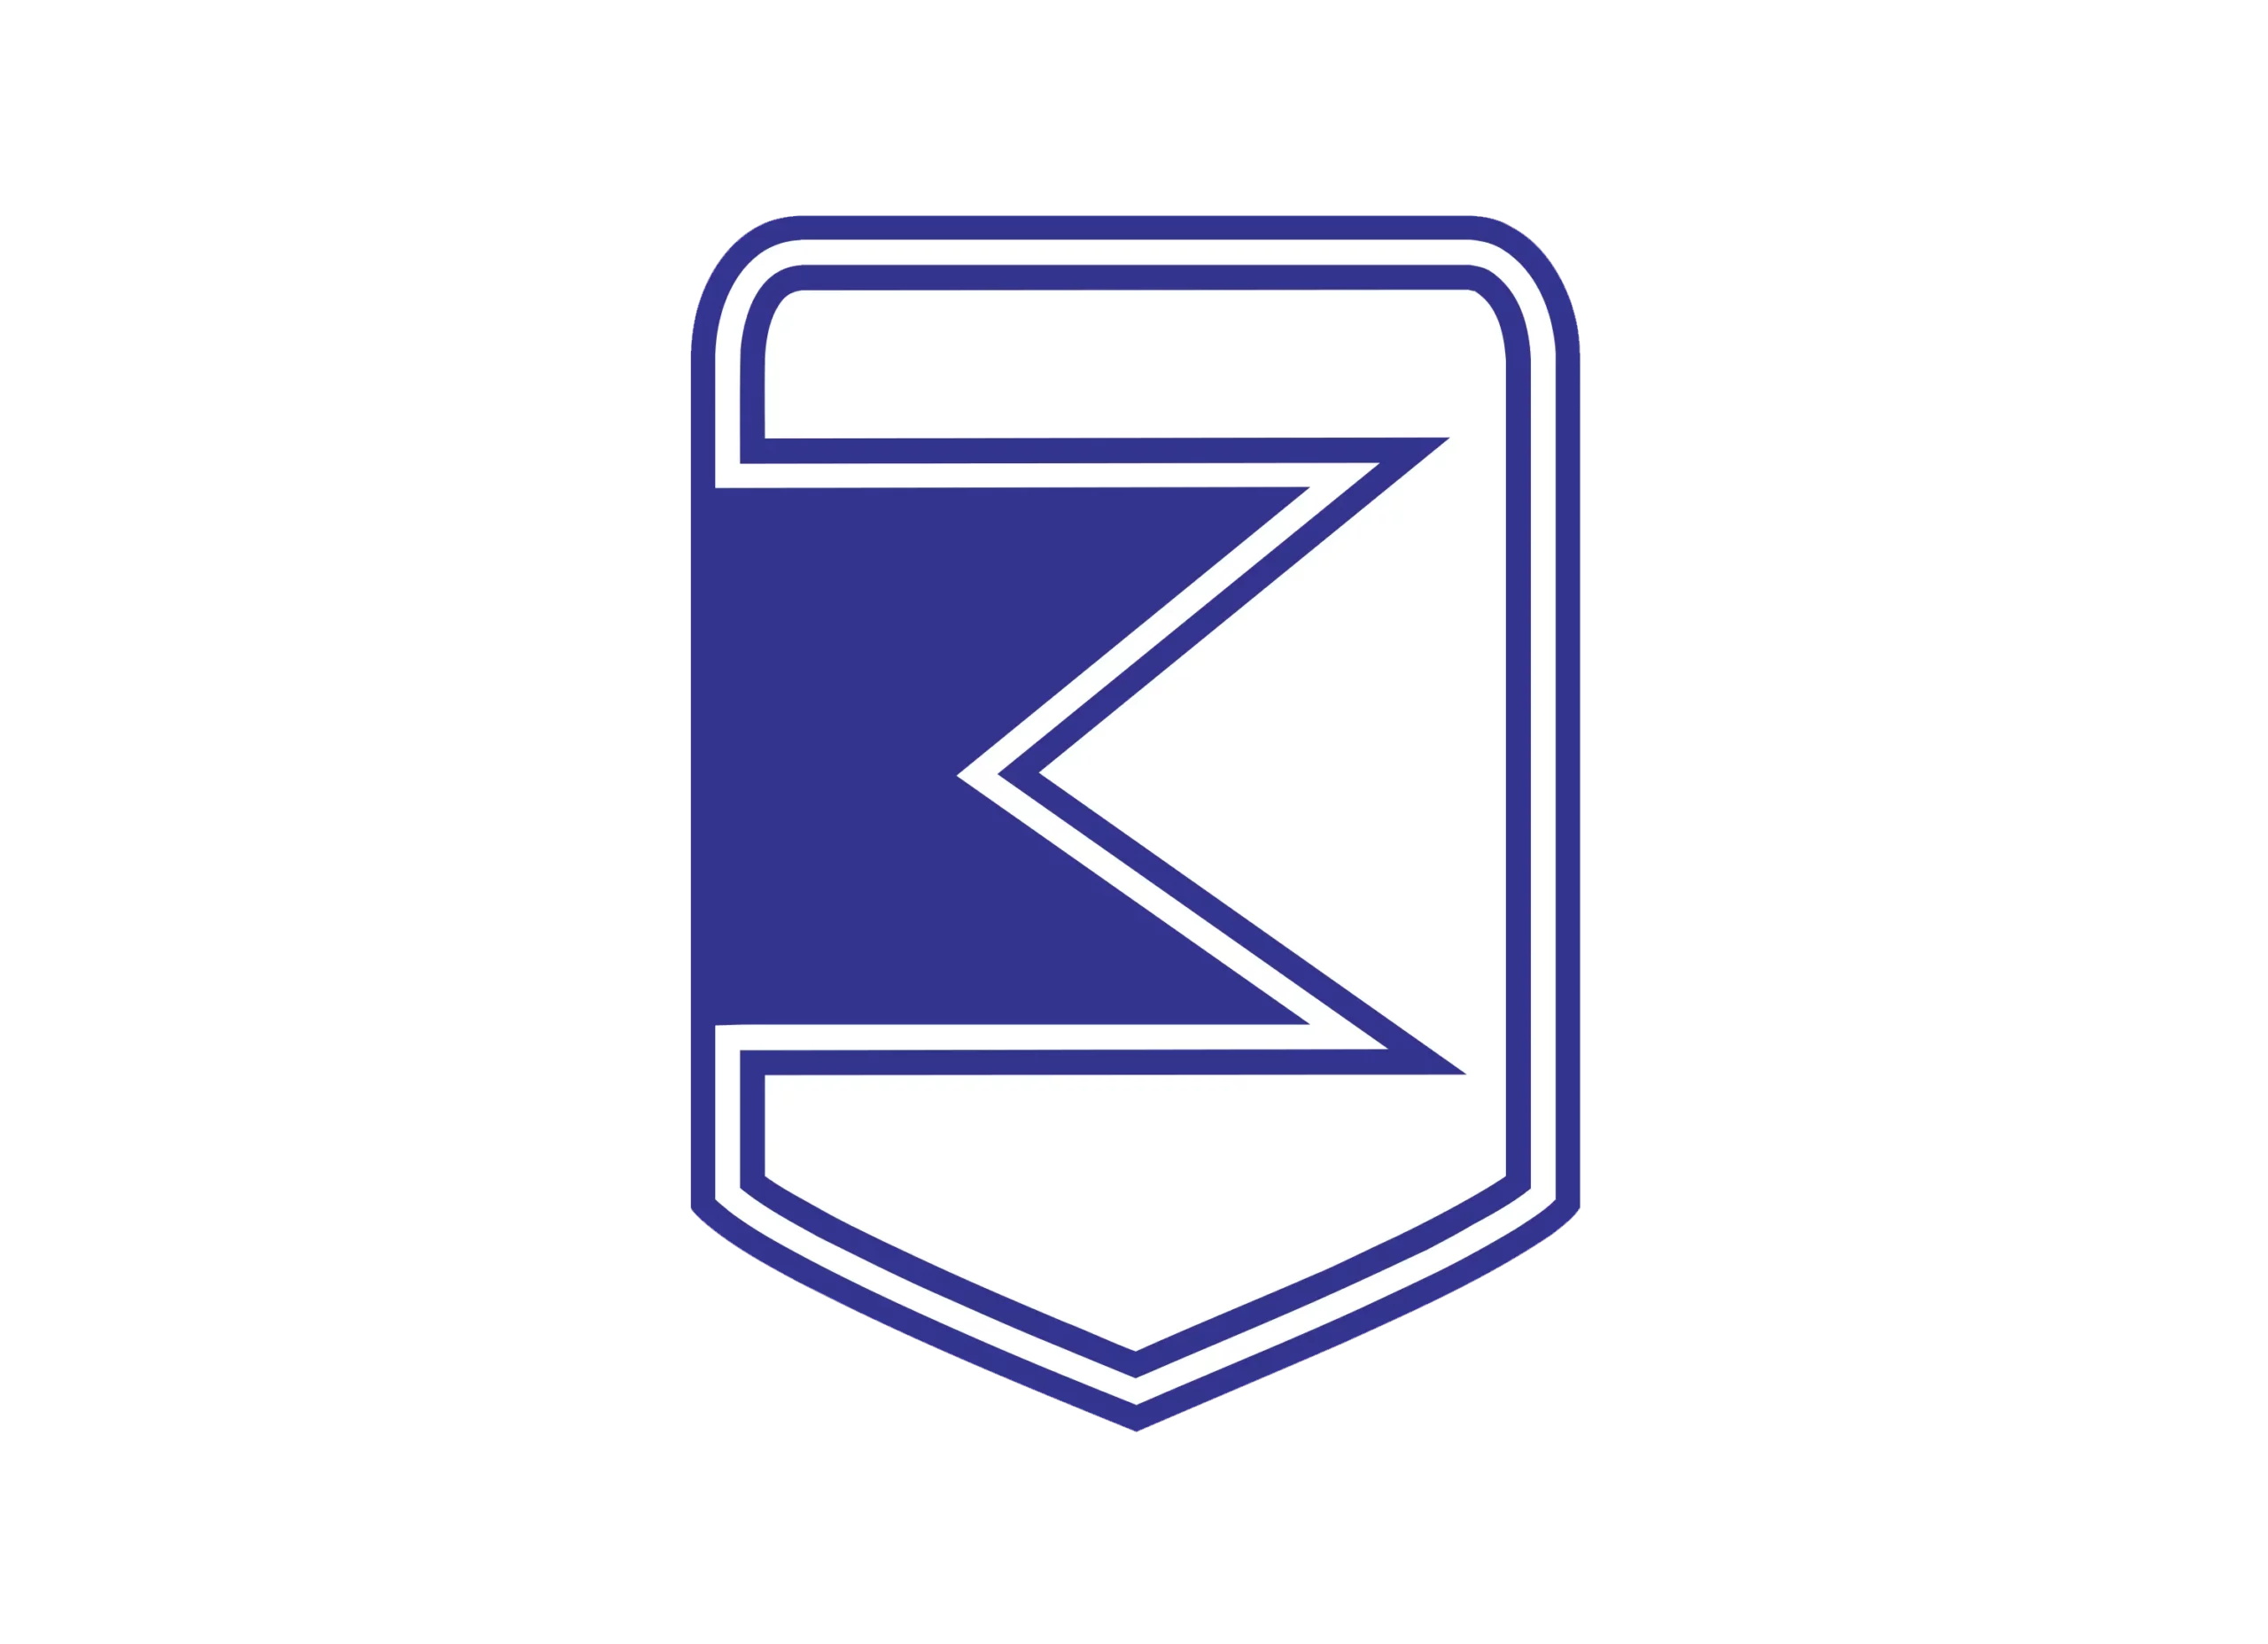 ZAZ logo 1986-1997